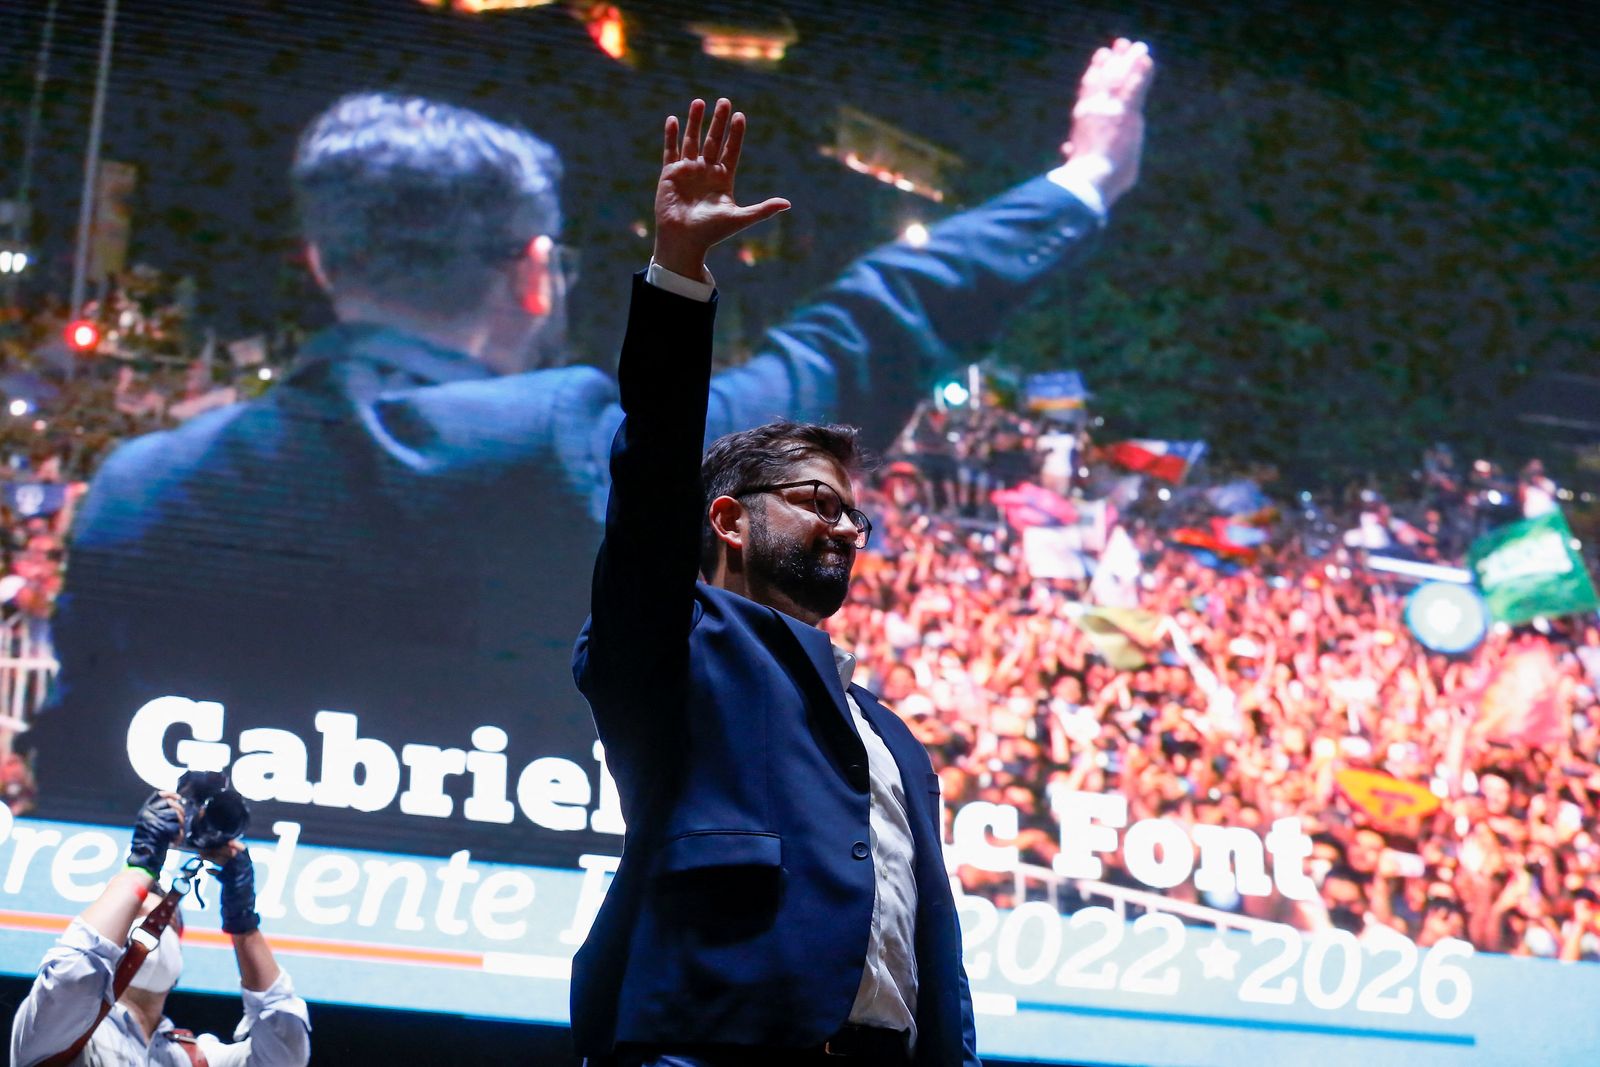 الرئيس التشيلي المنتخب جابرييل بوريك يشير خلال احتفاله مع مؤيديه بعد فوزه في الانتخابات الرئاسية، تشيلي، 19 ديسمبر 2021. - REUTERS